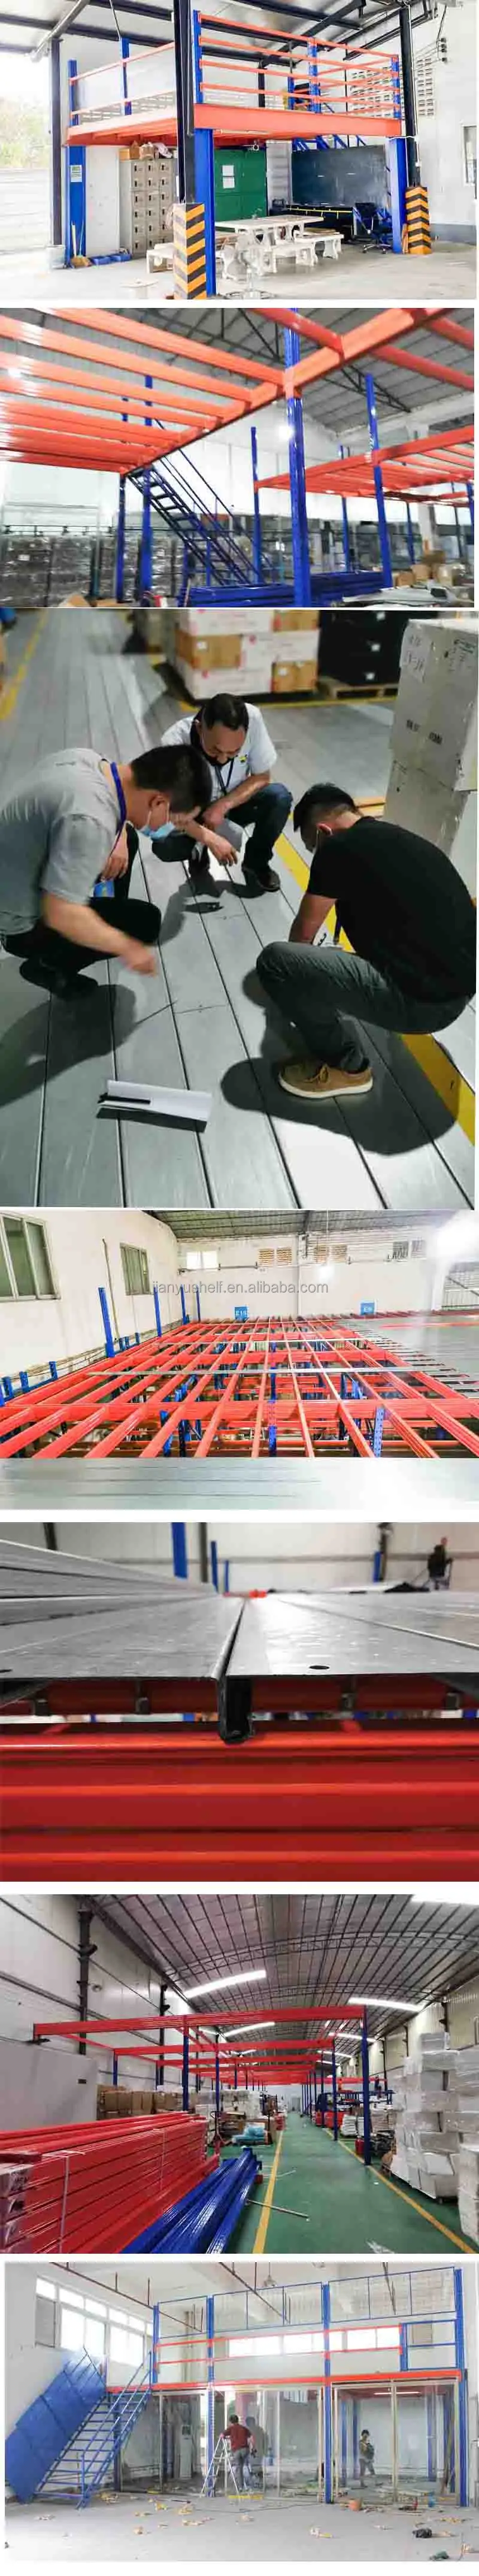 メザニンプラットフォームラック倉庫産業用スチールメザニンフロアラダーマルチフロア屋根裏ラック組み立て式メザニン製造